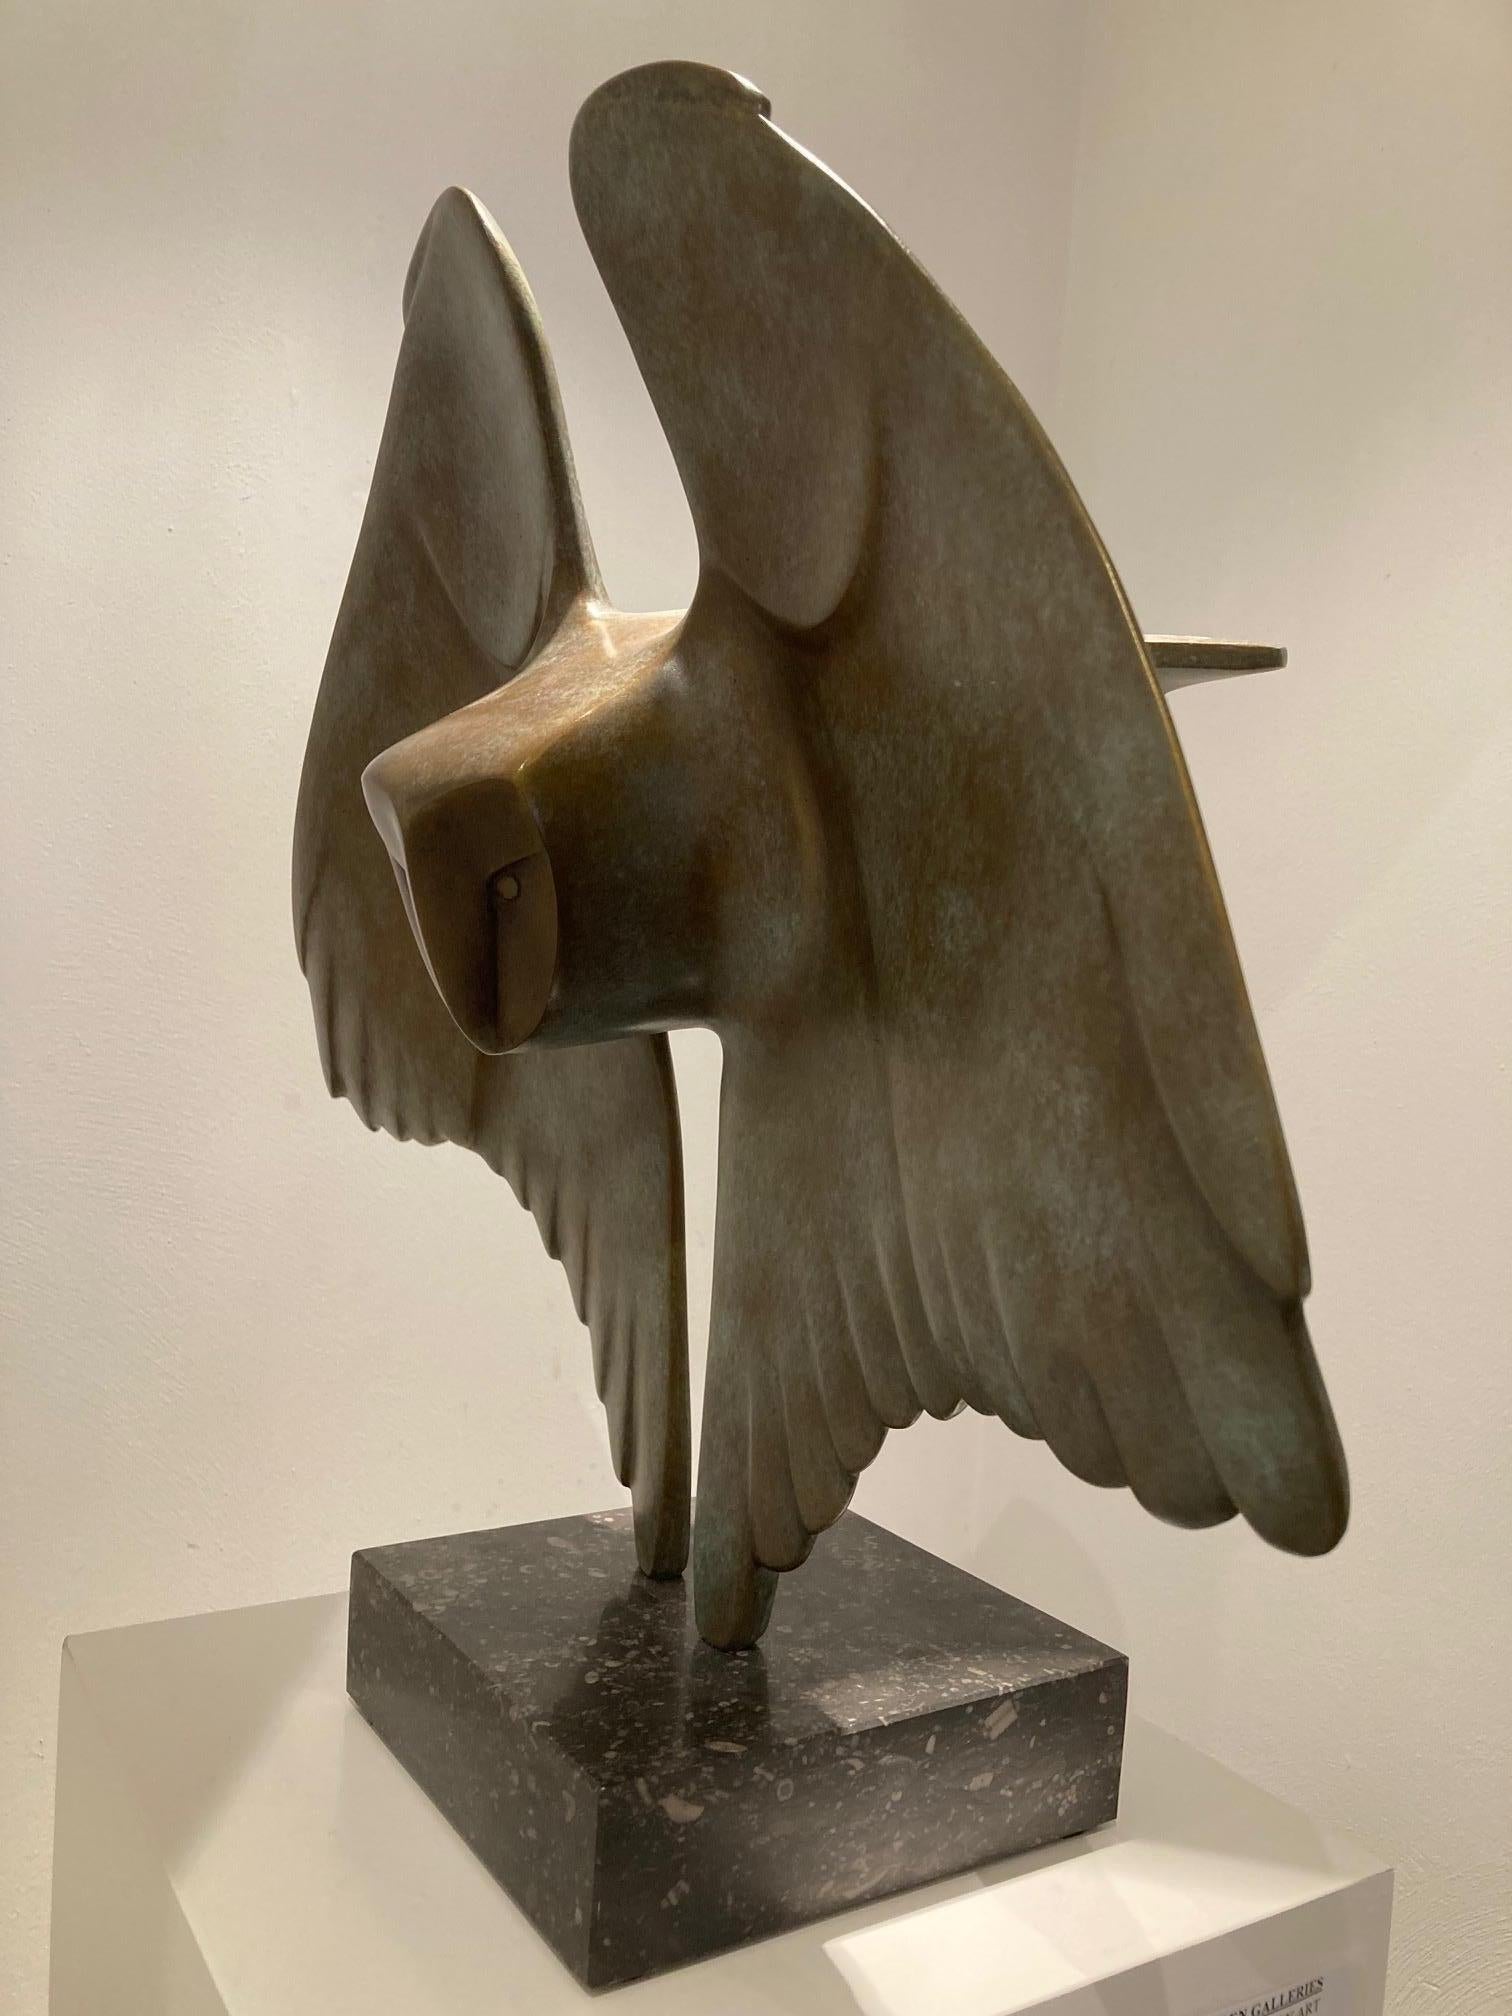 Sculpture de hibou volant en bronze Vliegende Uil n° 7, édition limitée en stock - Or Figurative Sculpture par Evert den Hartog